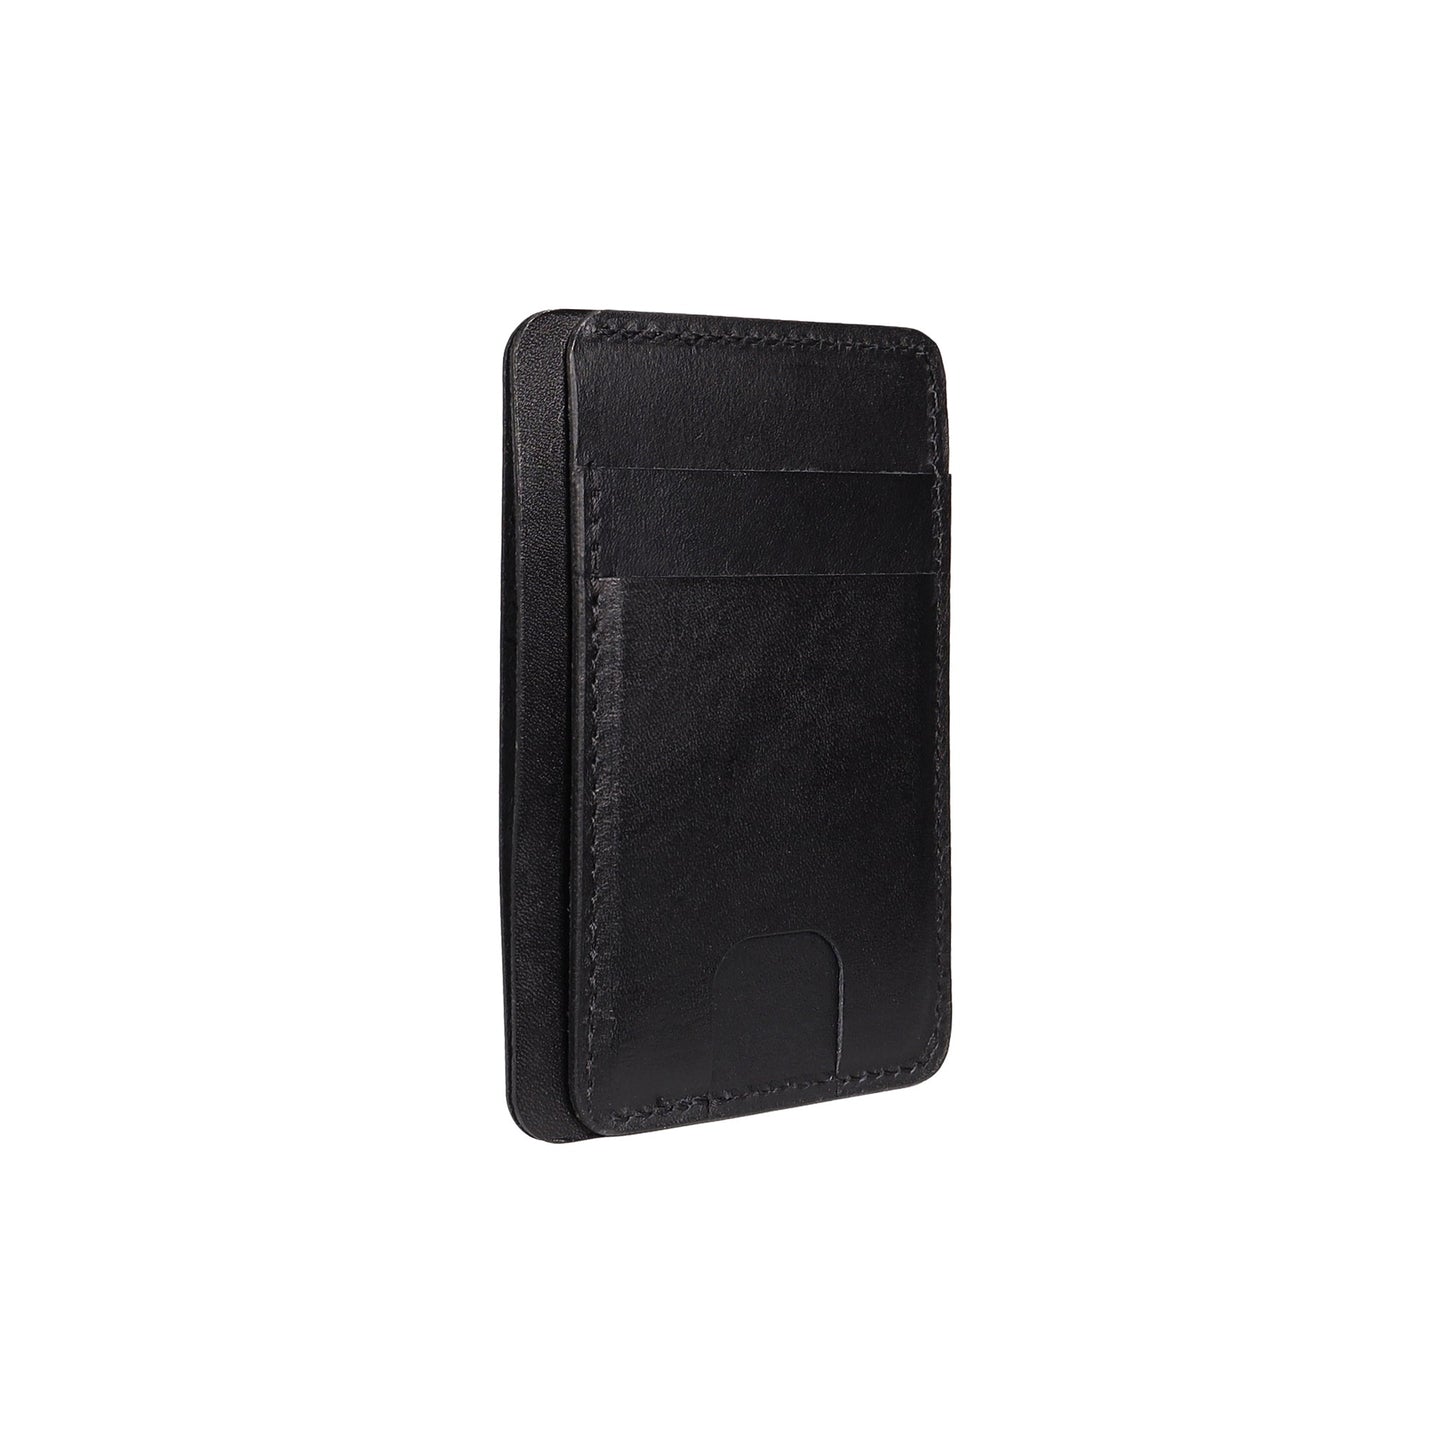 Black leather Front Pocket Wallet